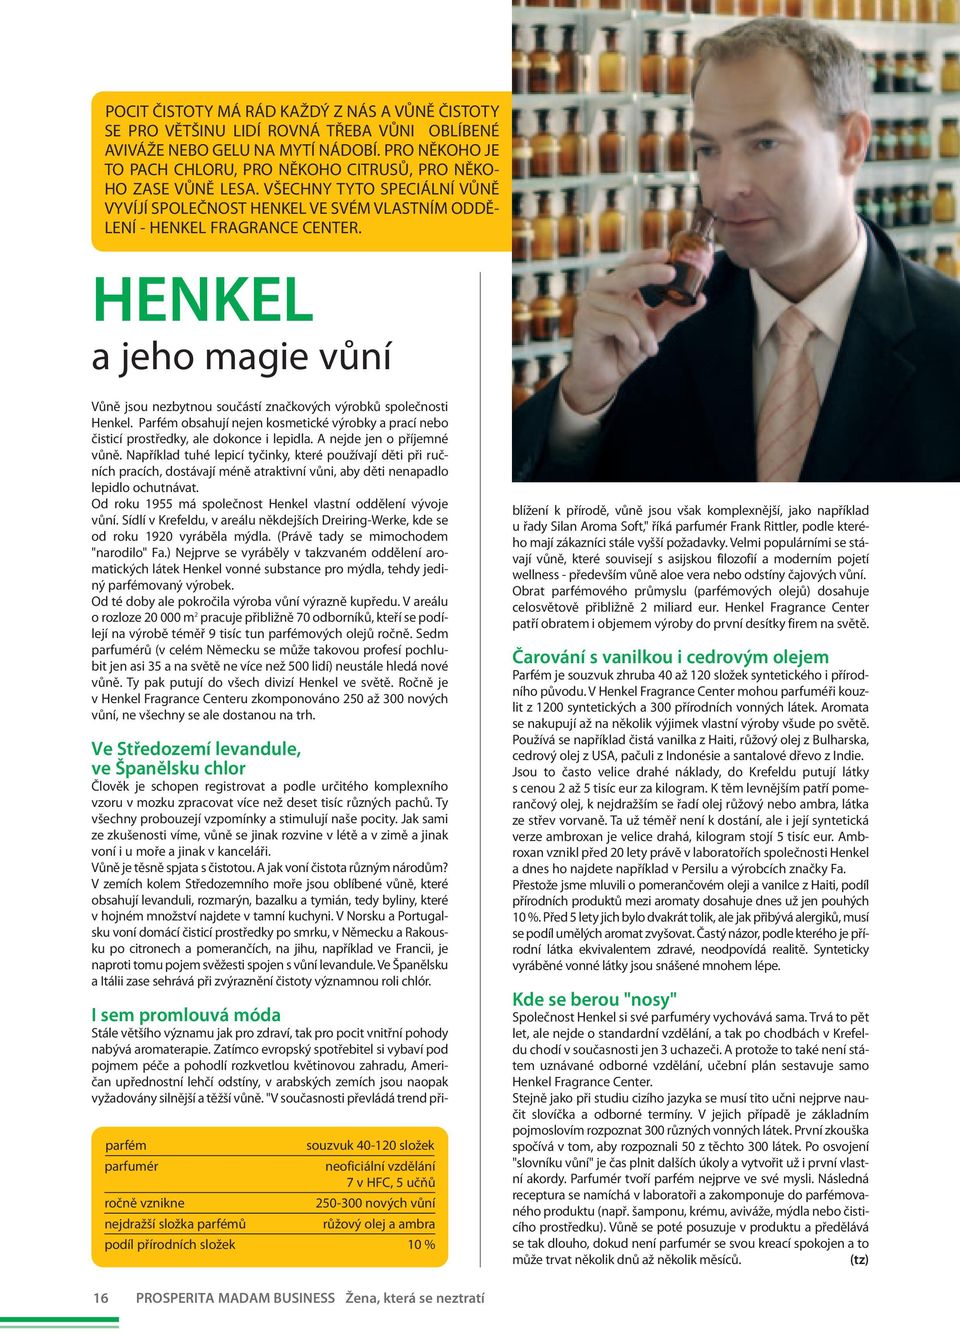 HENKEL a jeho magie vůní Vůně jsou nezbytnou součástí značkových výrobků společnosti Henkel. Parfém obsahují nejen kosmetické výrobky a prací nebo čisticí prostředky, ale dokonce i lepidla.